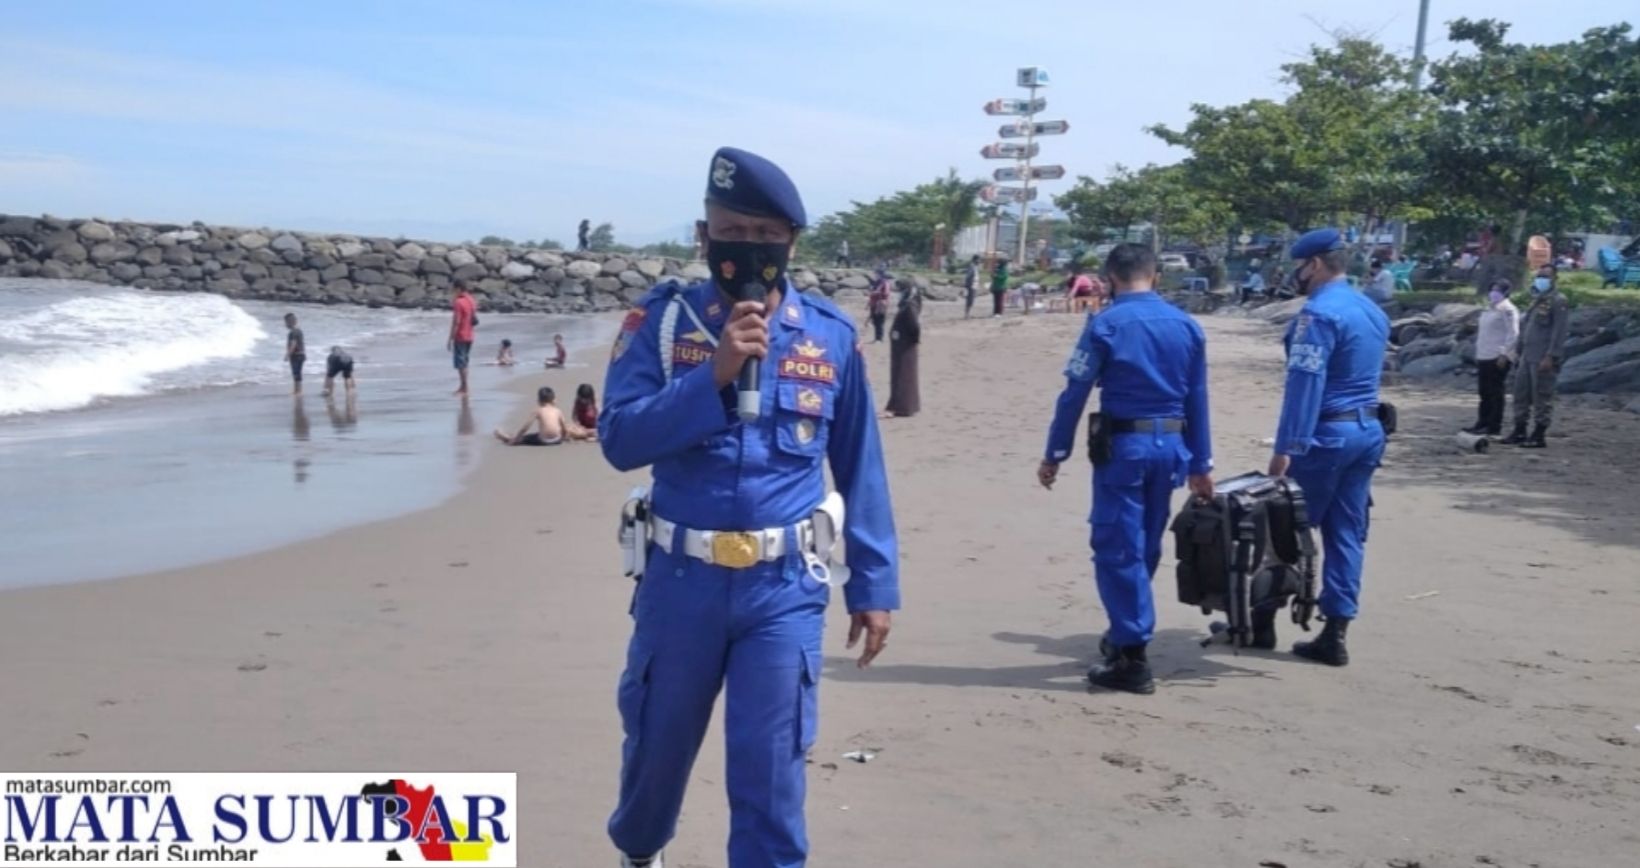 Antisipasi Musibah di Laut, Personel Polairud Polda Sumbar Sambangi Wisatawan Pantai Padang